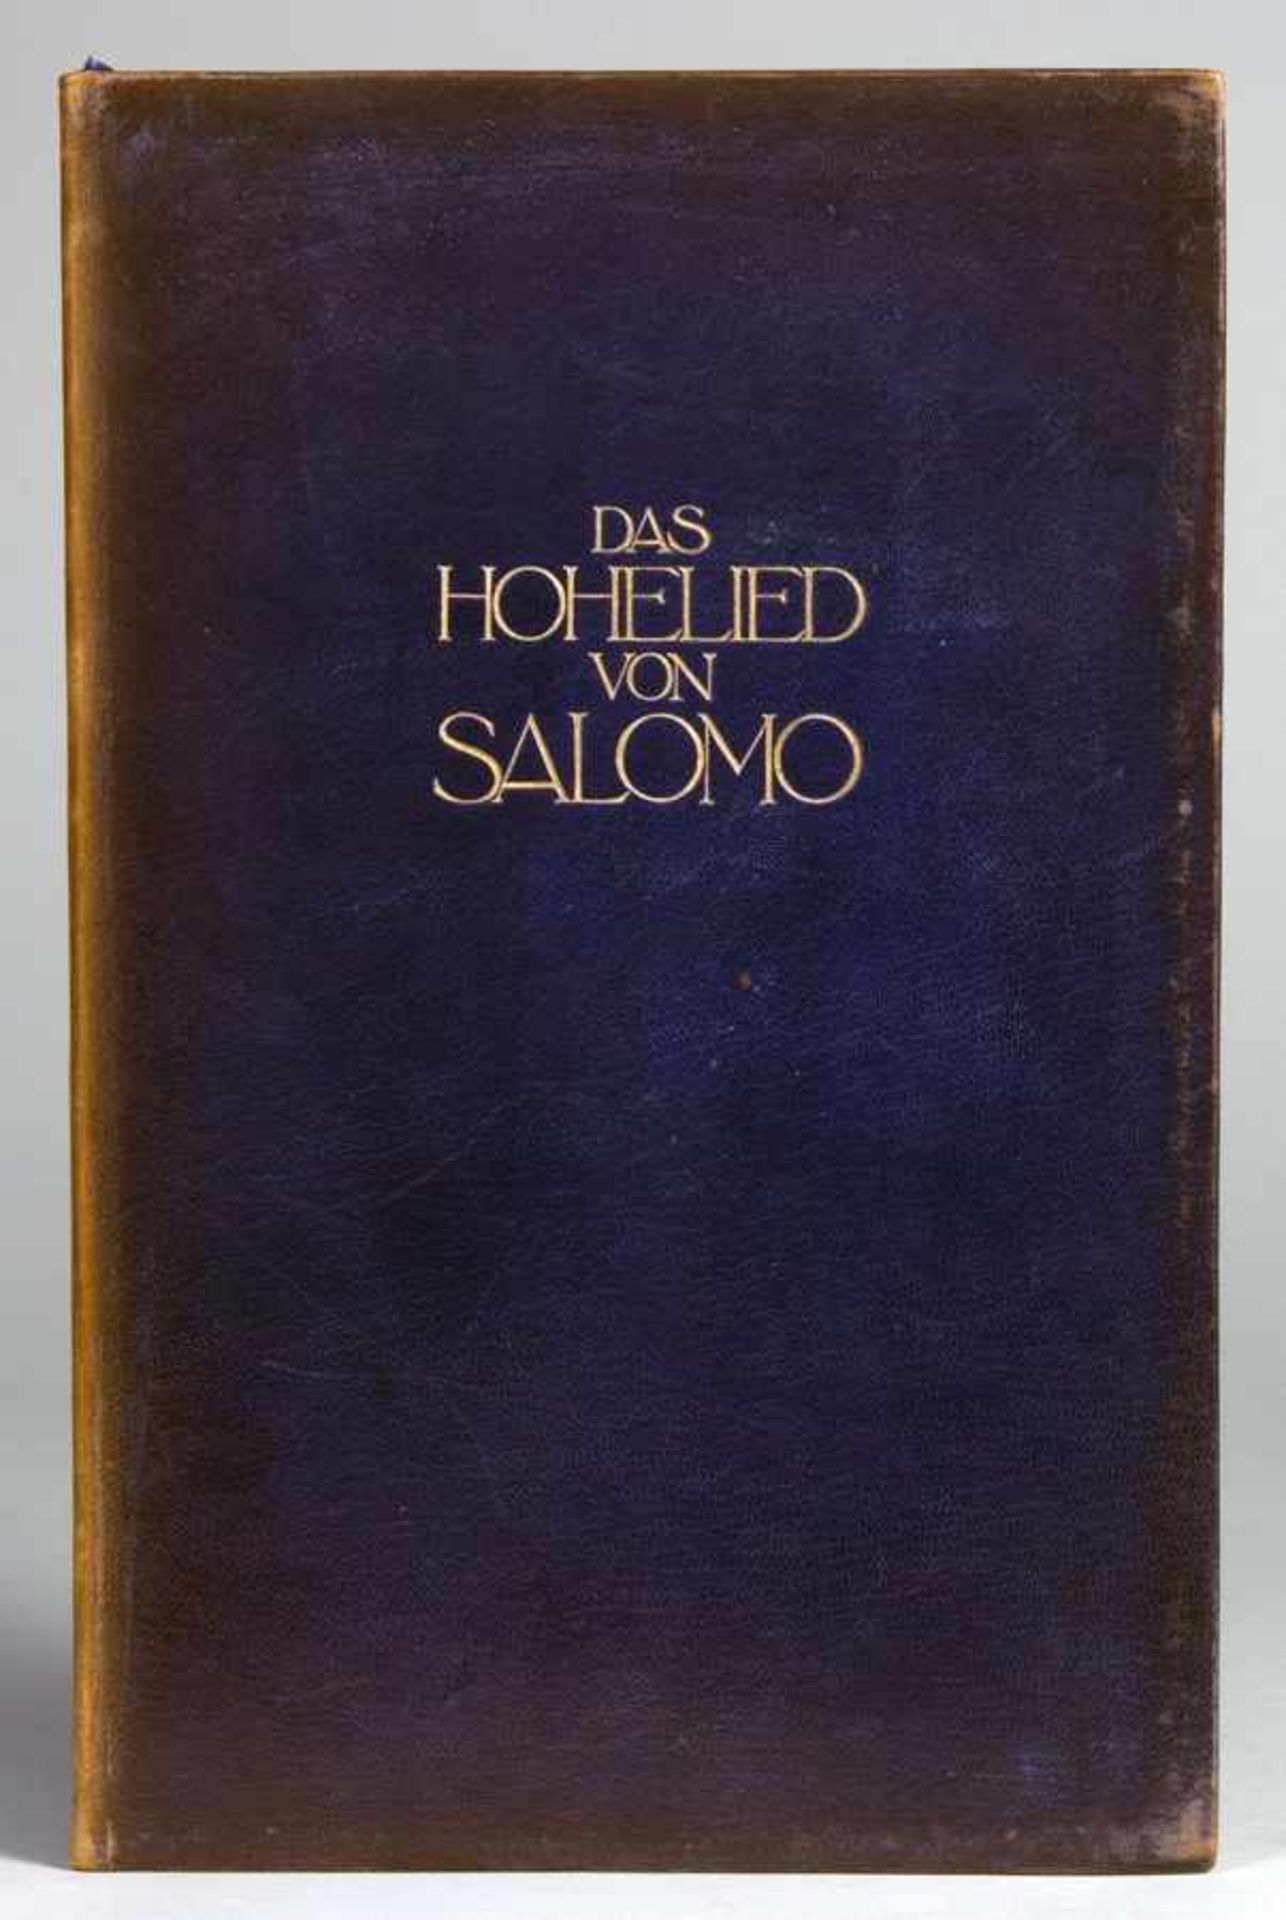 Ernst Ludwig-Presse - Das Hohe Lied von Salomo. Leipzig, Insel 1909. Mit illustriertem Doppeltitel - Image 2 of 2